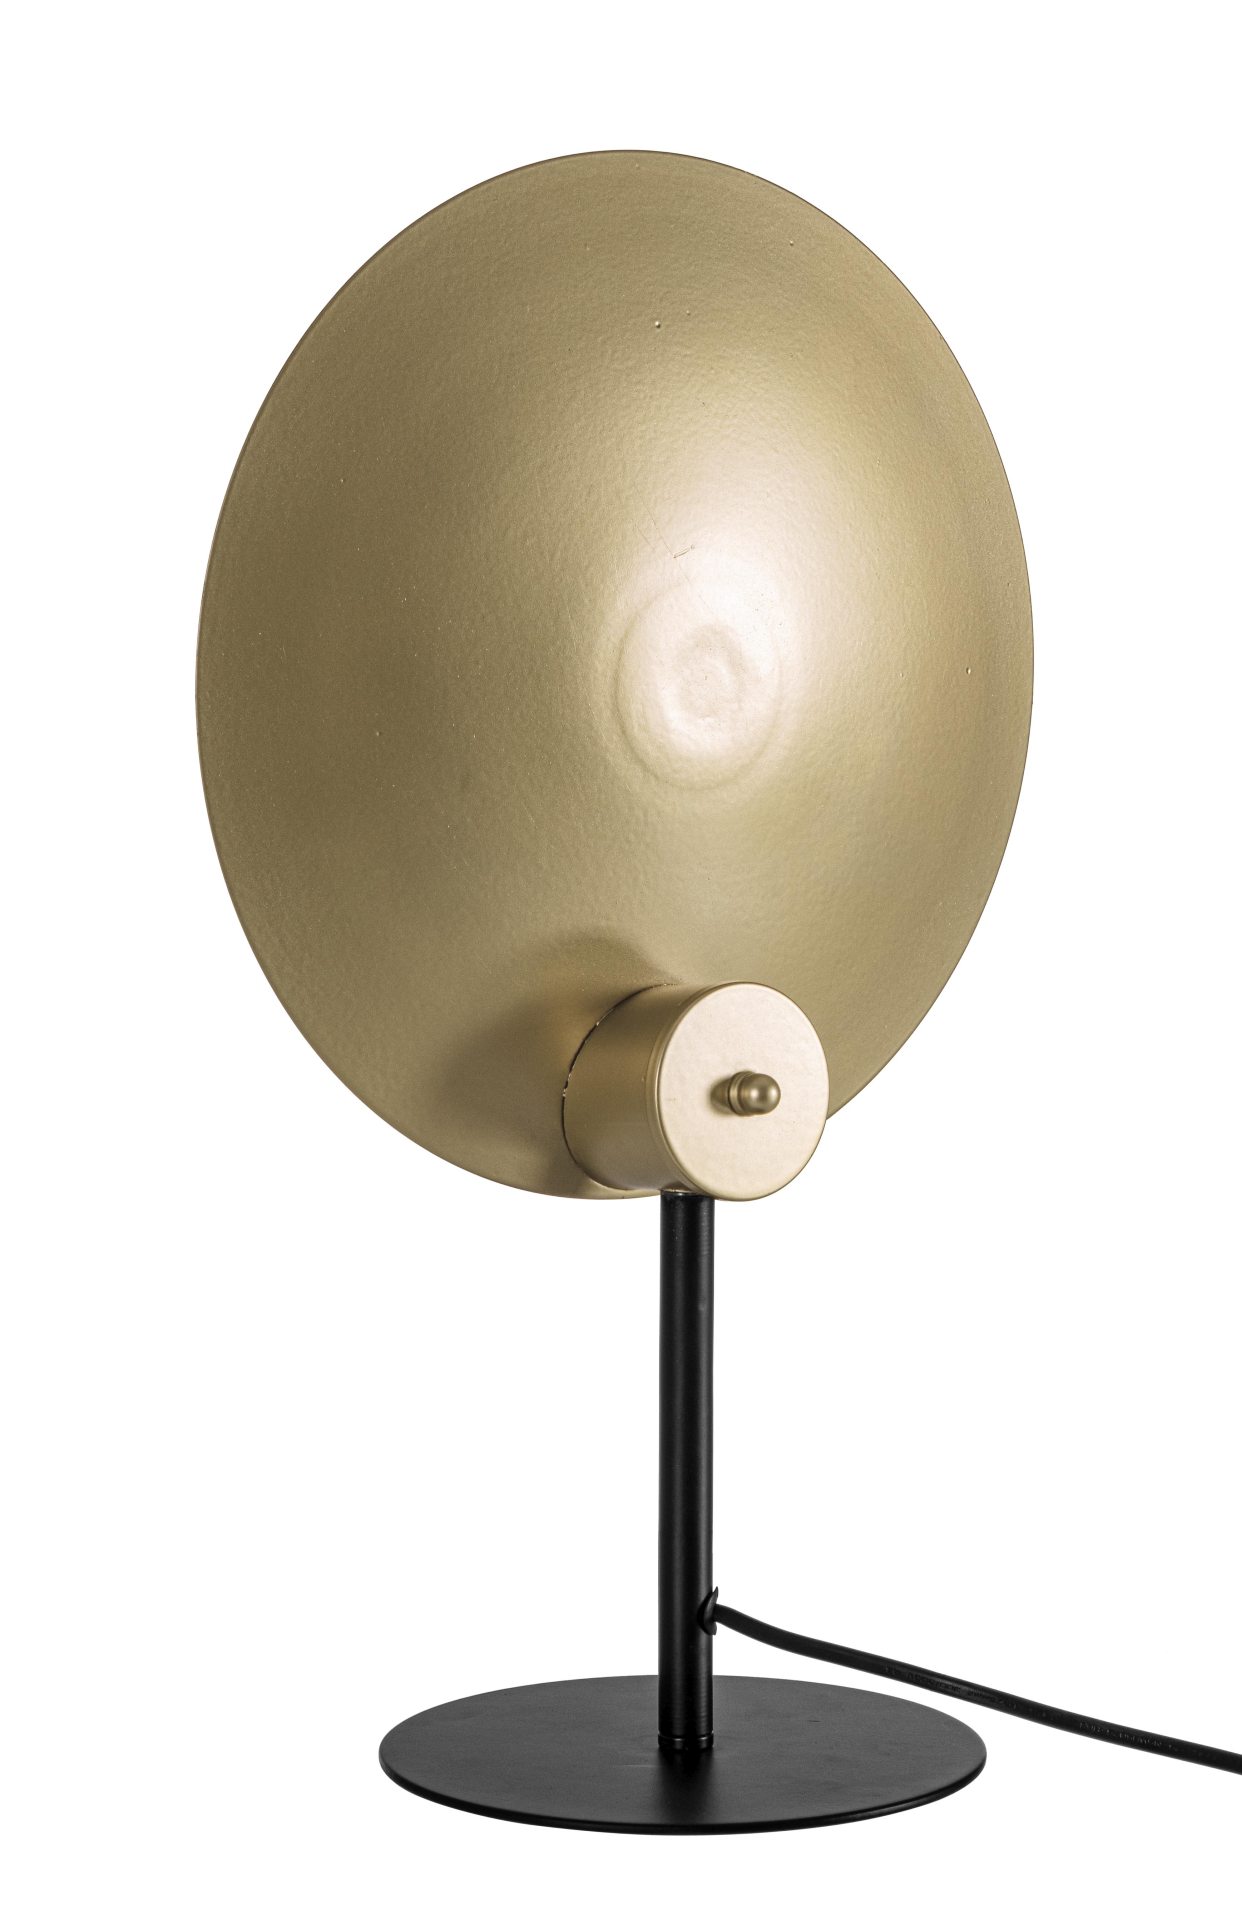 Die Tischleuchte Design überzeugt mit ihrem modernen Design. Gefertigt wurde sie aus Metall, welches einen schwarzen Farbton besitzt. Der Lampenschirm ist auch aus Metall und hat eine goldene Farbe. Die Lampe besitzt eine Höhe von 46 cm.